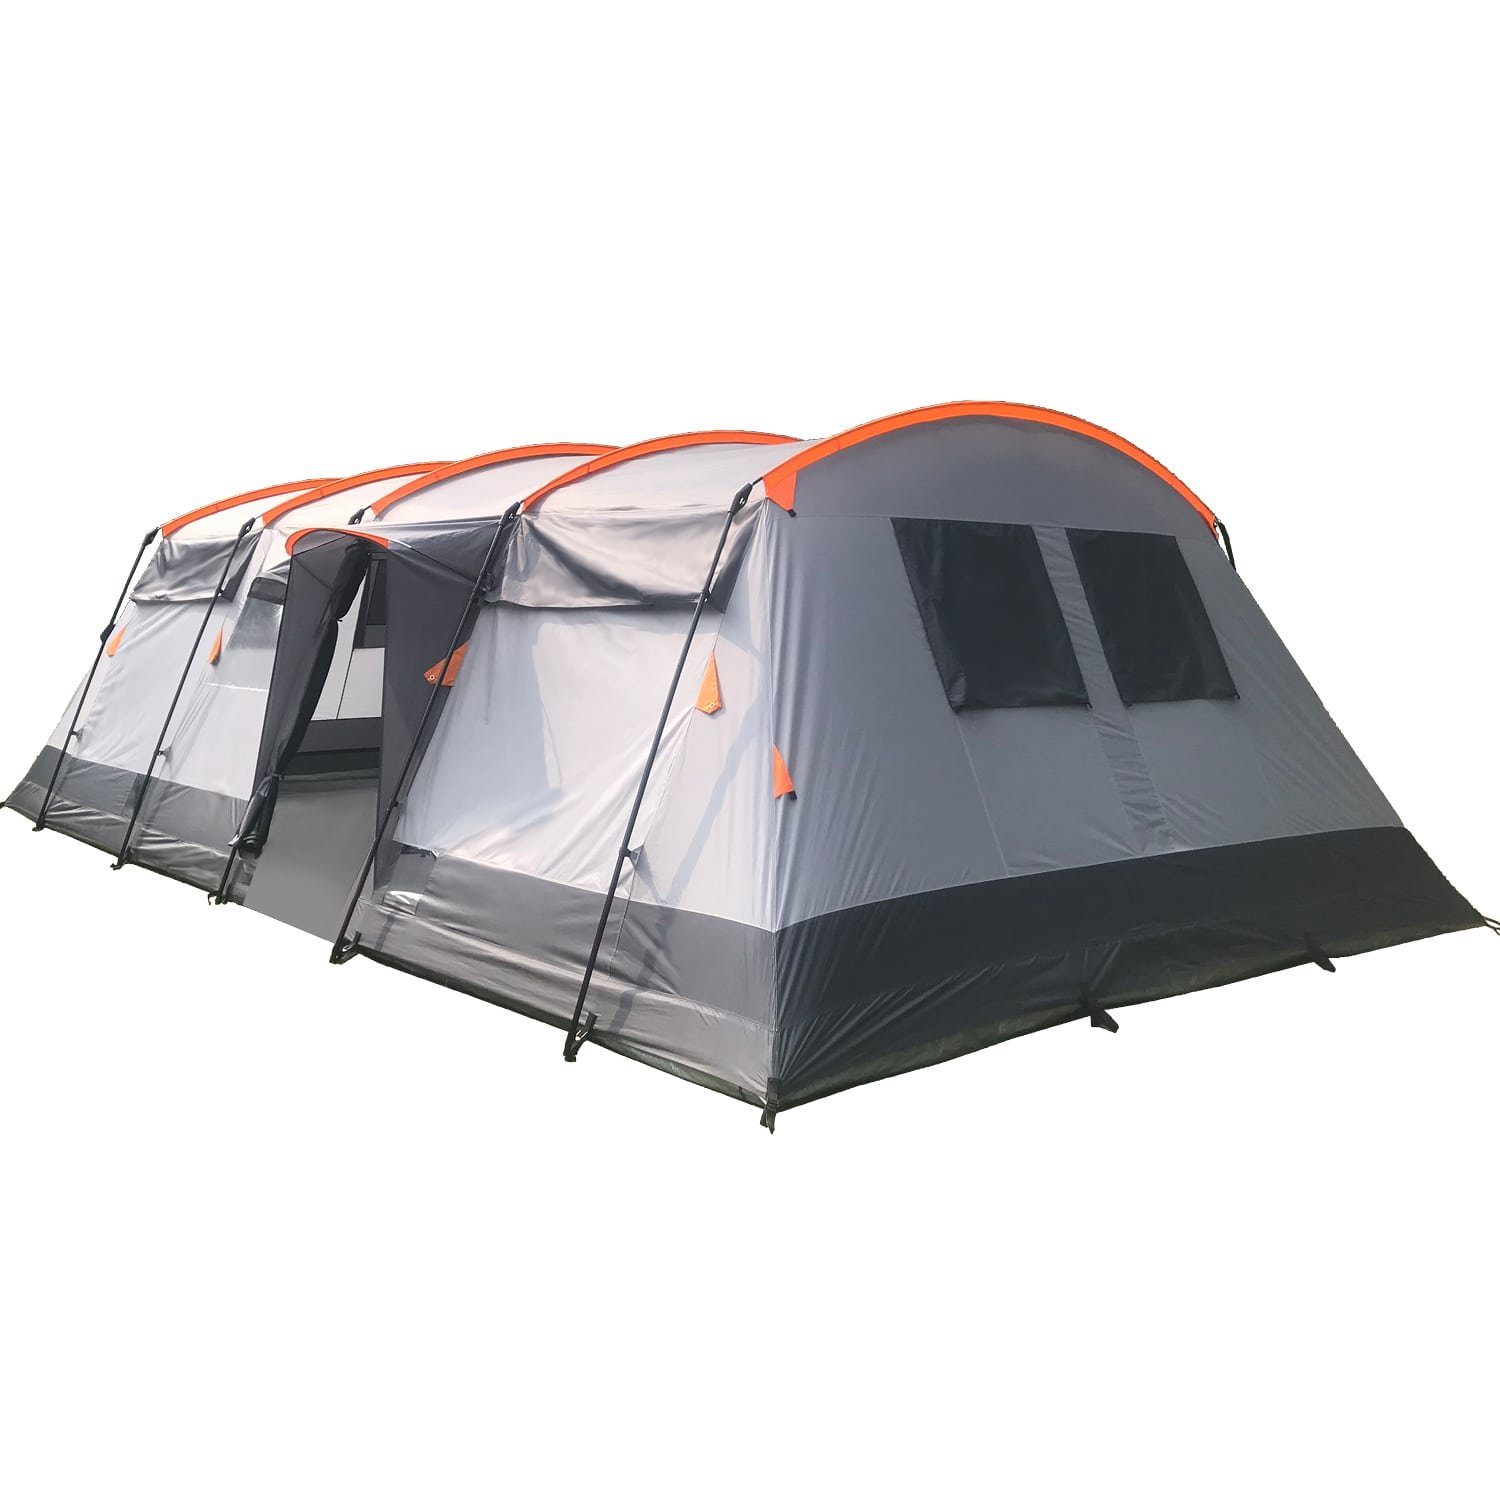 Skandika Gruppenzelt Hurricane 12 Tunnelzelt (grau/orange), Großes Zelt mit  2 Schlafkabinen, mit/ohne eingenähtem Zeltboden, wasserdicht, 5000 mm  Wassersäule, 2,15 m Stehhöhe, 2 Eingänge, Campingzelt